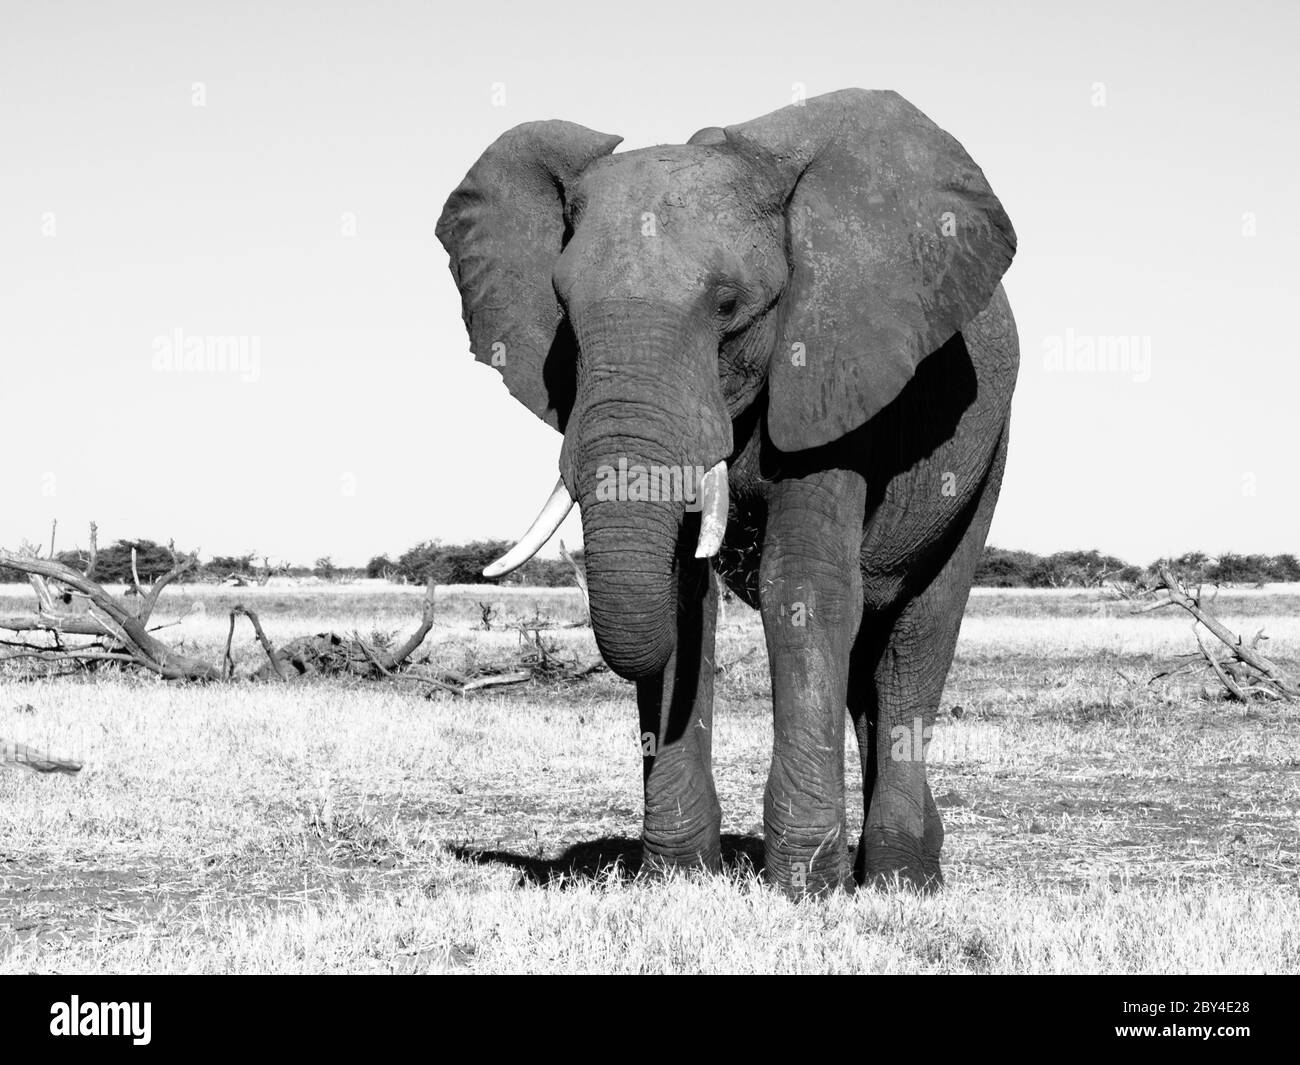 Elefante africano grande en los pastizales del Parque Nacional Chobe (fotografía en blanco y negro) Foto de stock